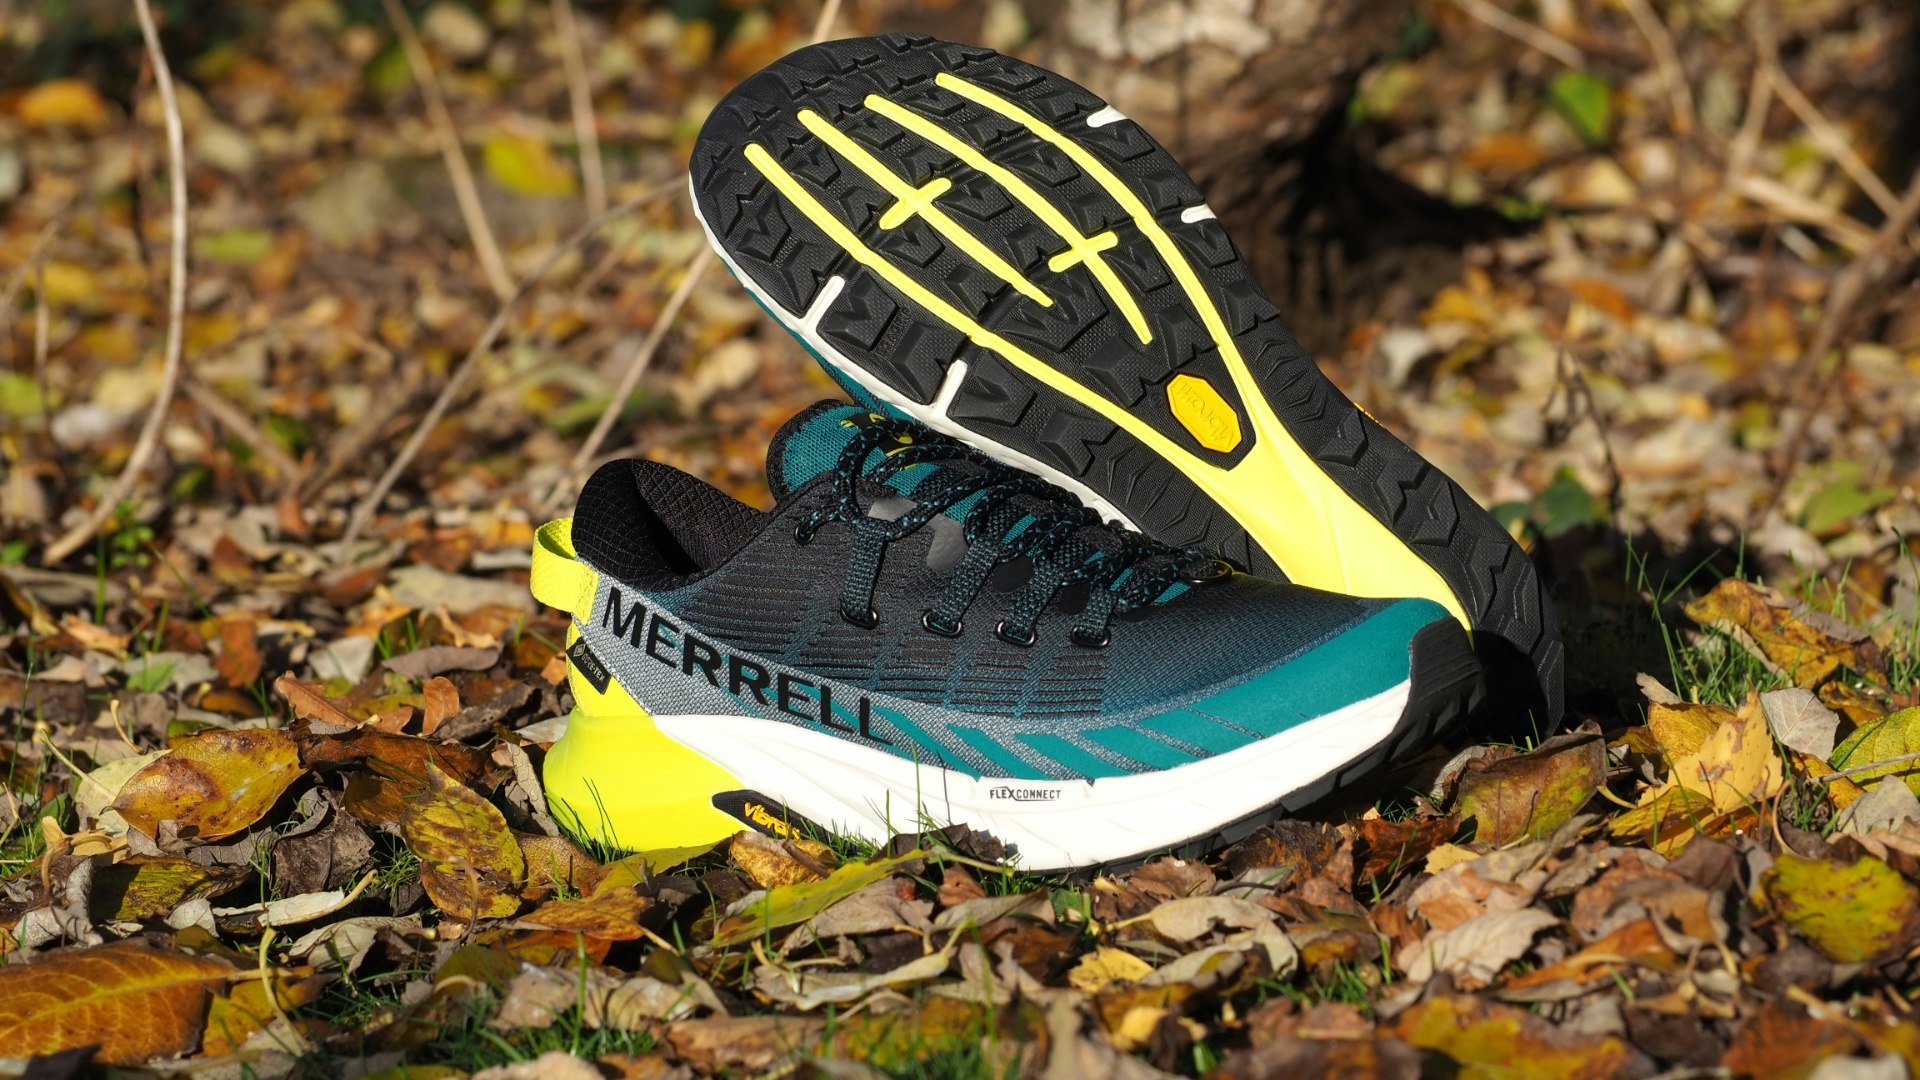 Merrell Agility Peak 4 Trail-Running Shoes - Men's